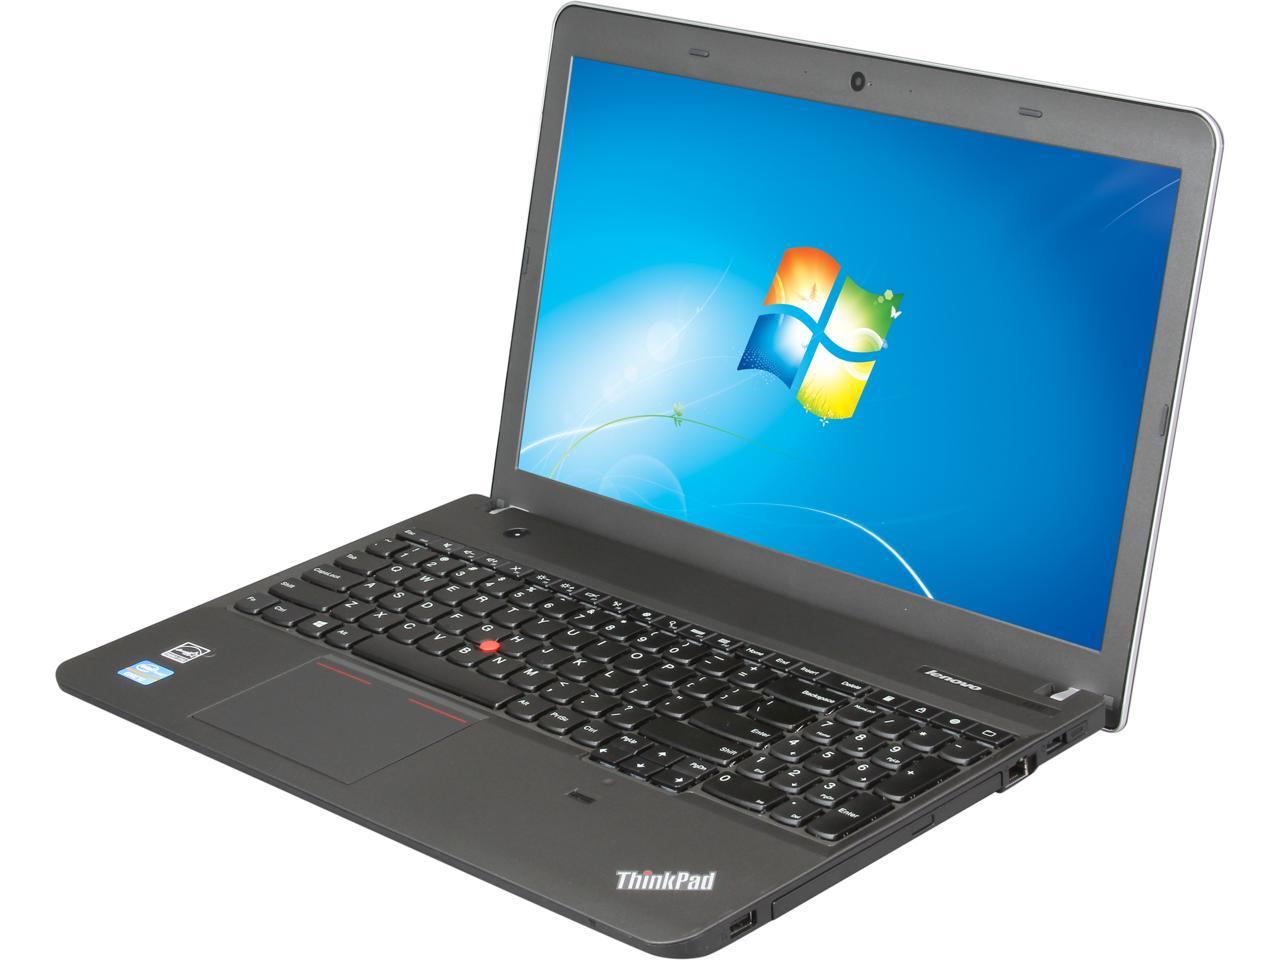 ThinkPad Edge E531 (688528U) Intel Core i7-3632QM 2.2GHz 15.6 